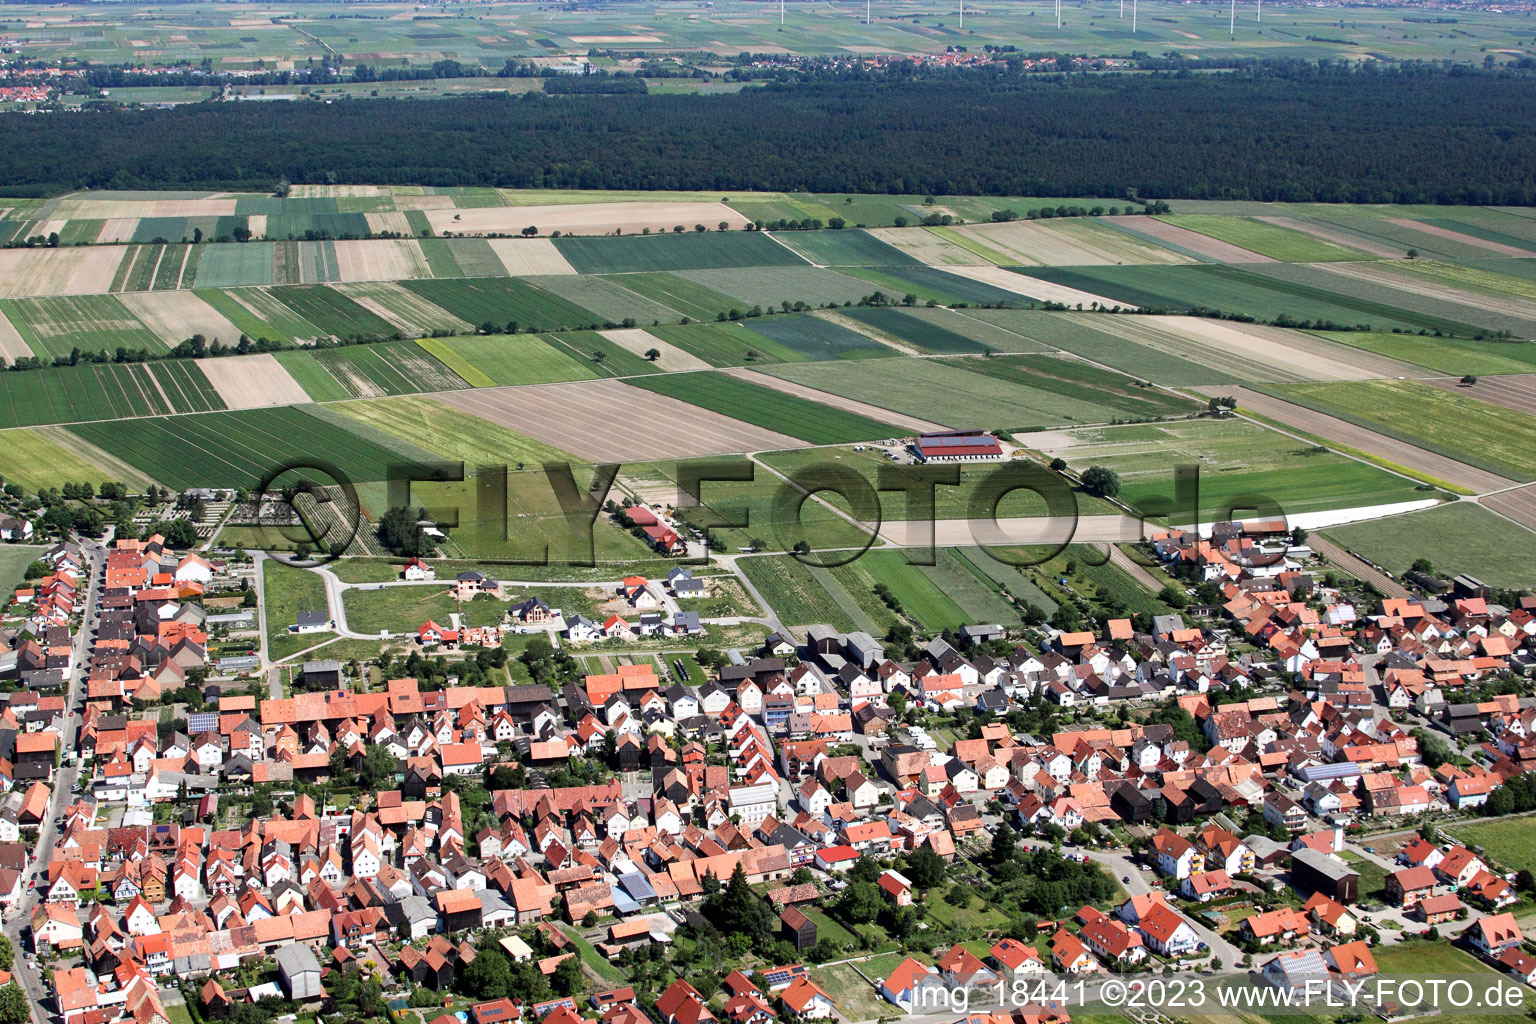 Hatzenbühl im Bundesland Rheinland-Pfalz, Deutschland von der Drohne aus gesehen